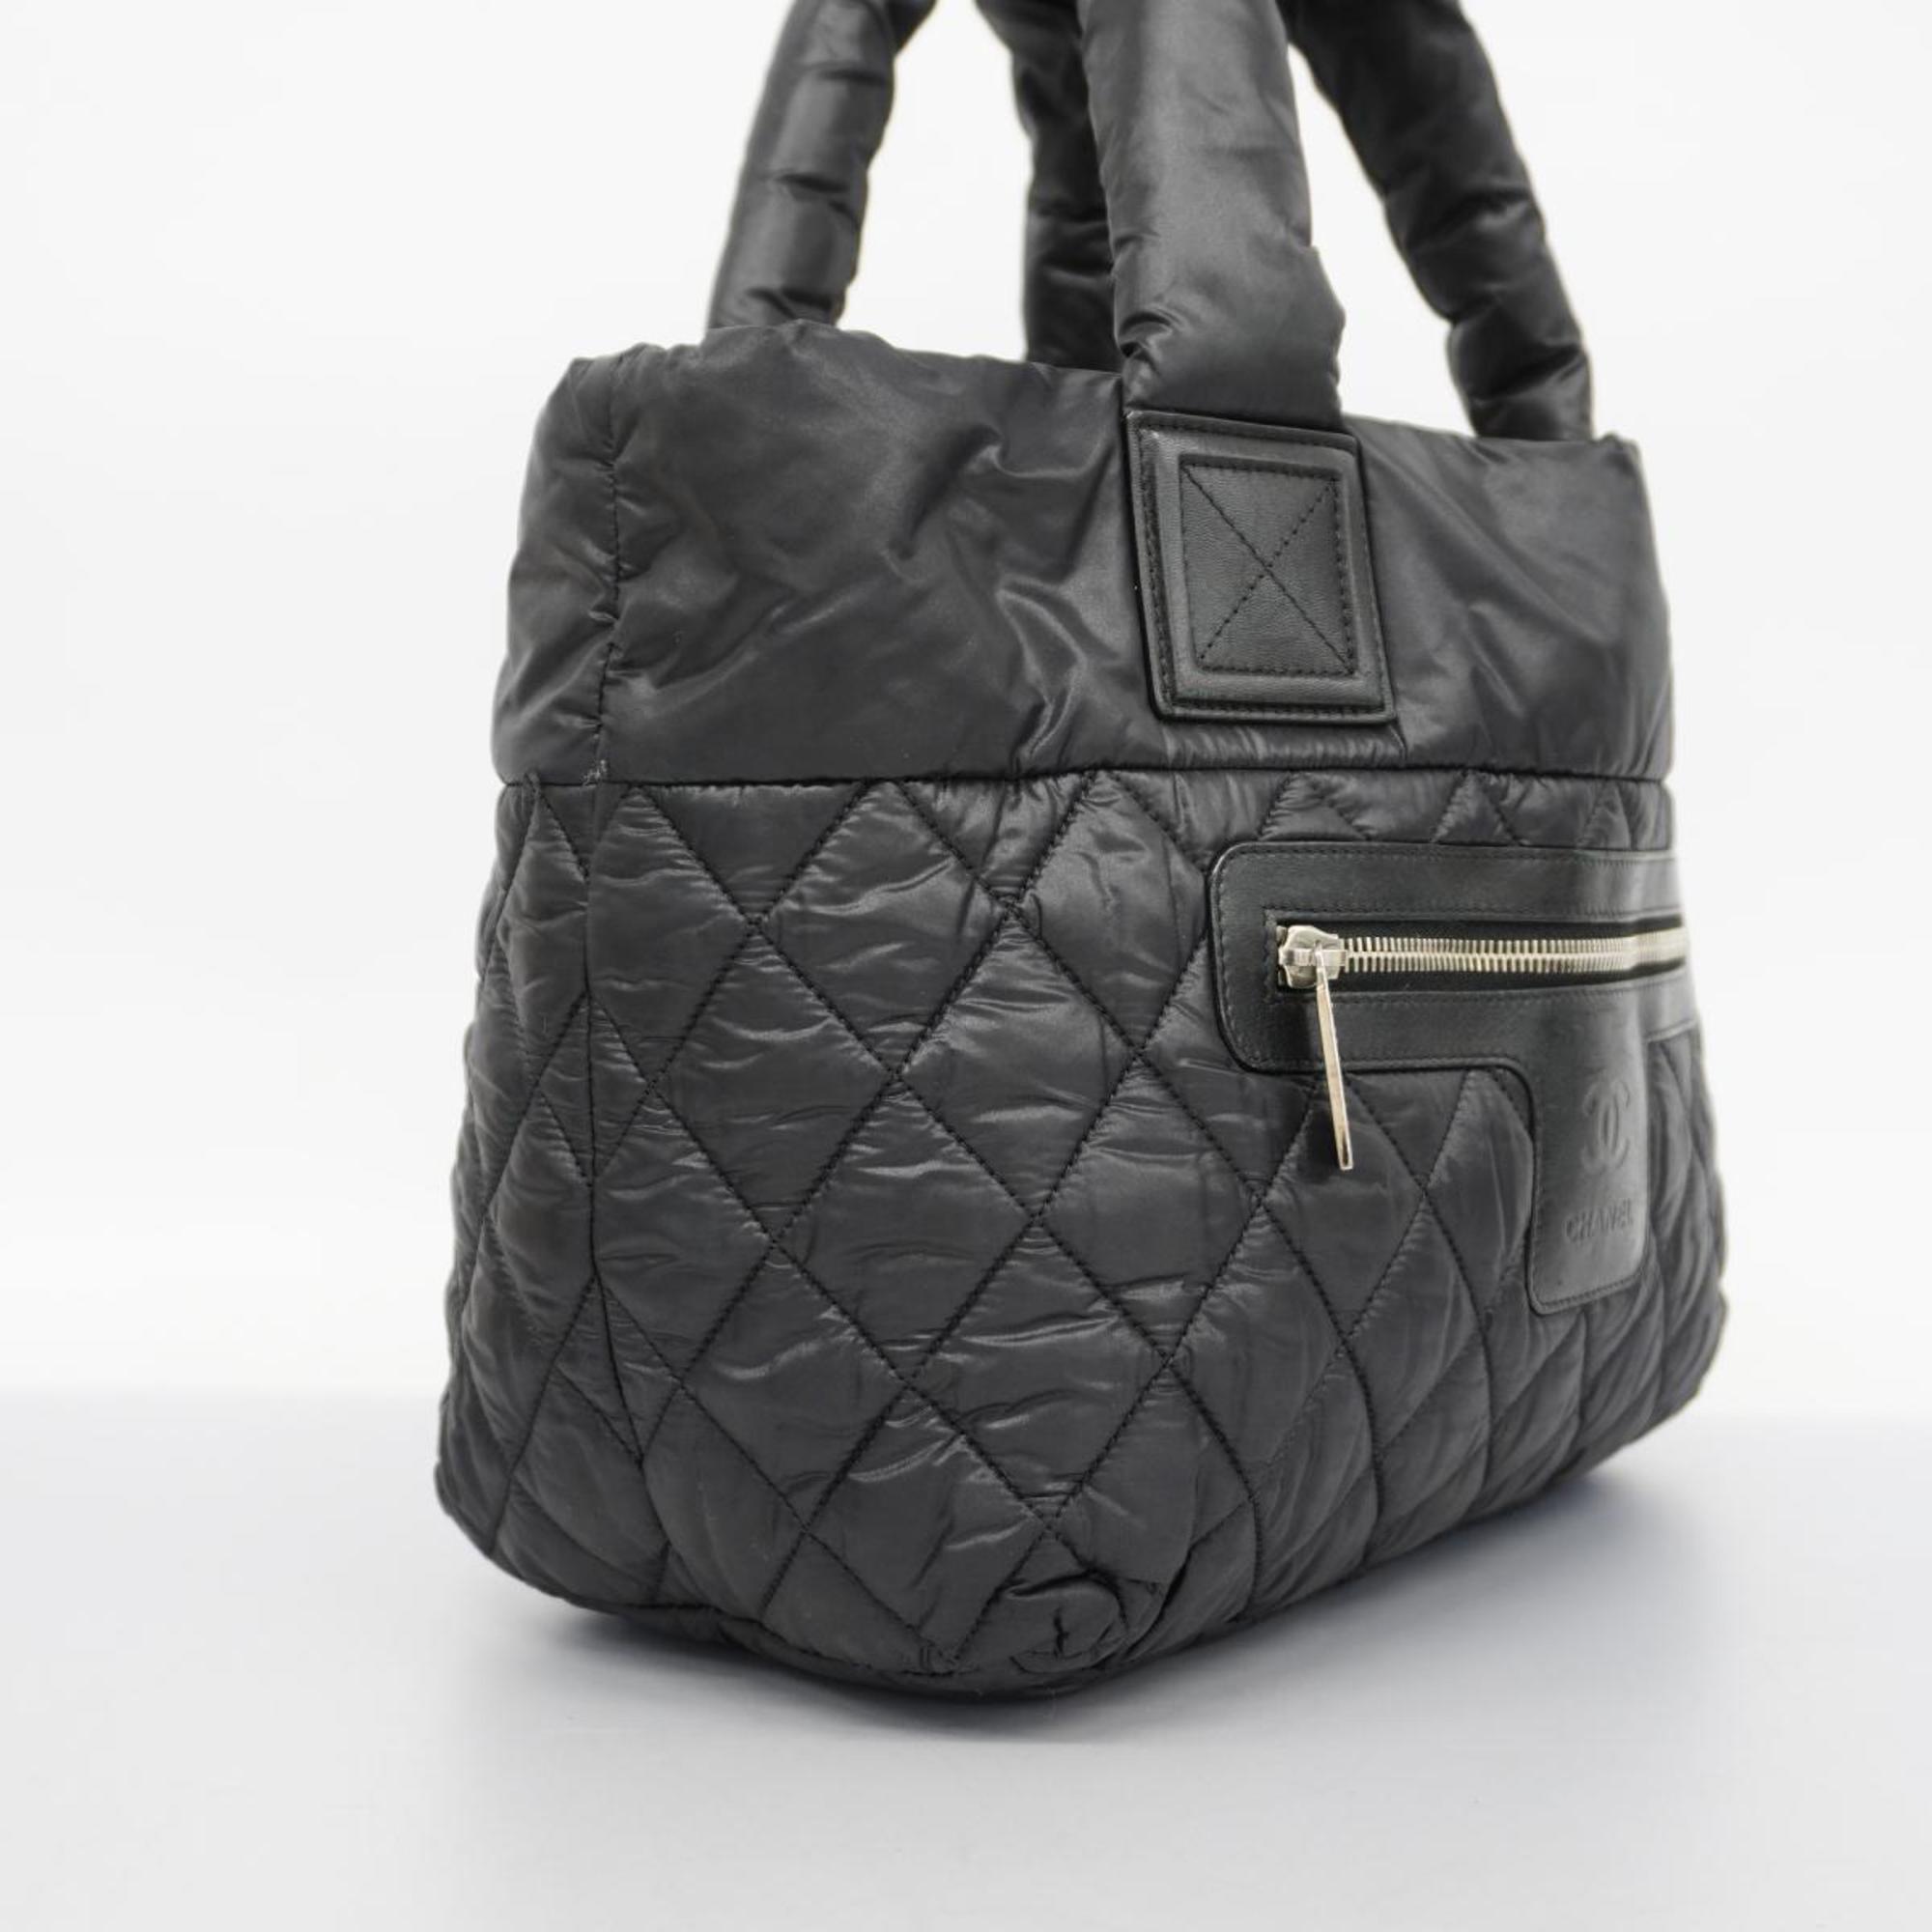 Chanel Tote Bag Coco Cocoon Nylon Black Women's